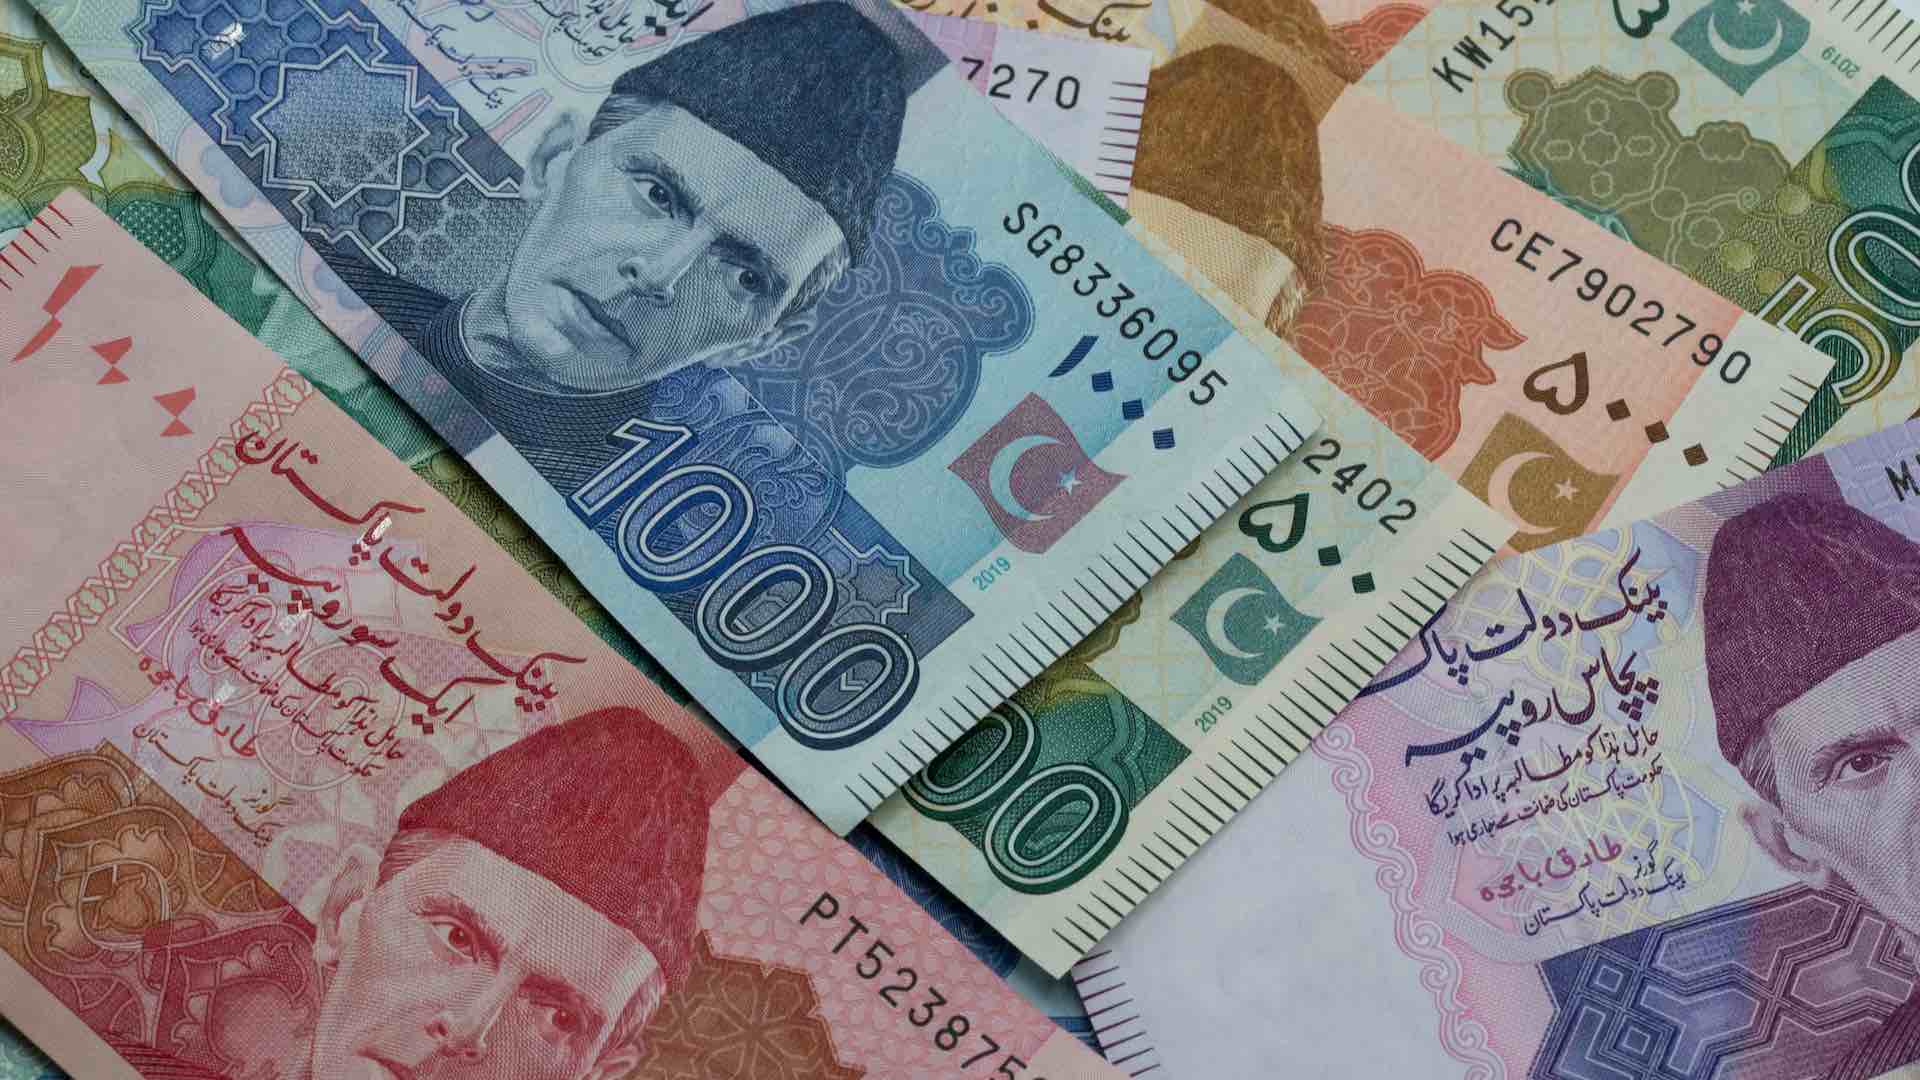 Siyasi çalkantıların ortasında Pakistan'ın para birimi tarihi düşük seviyelerle karşı karşıya